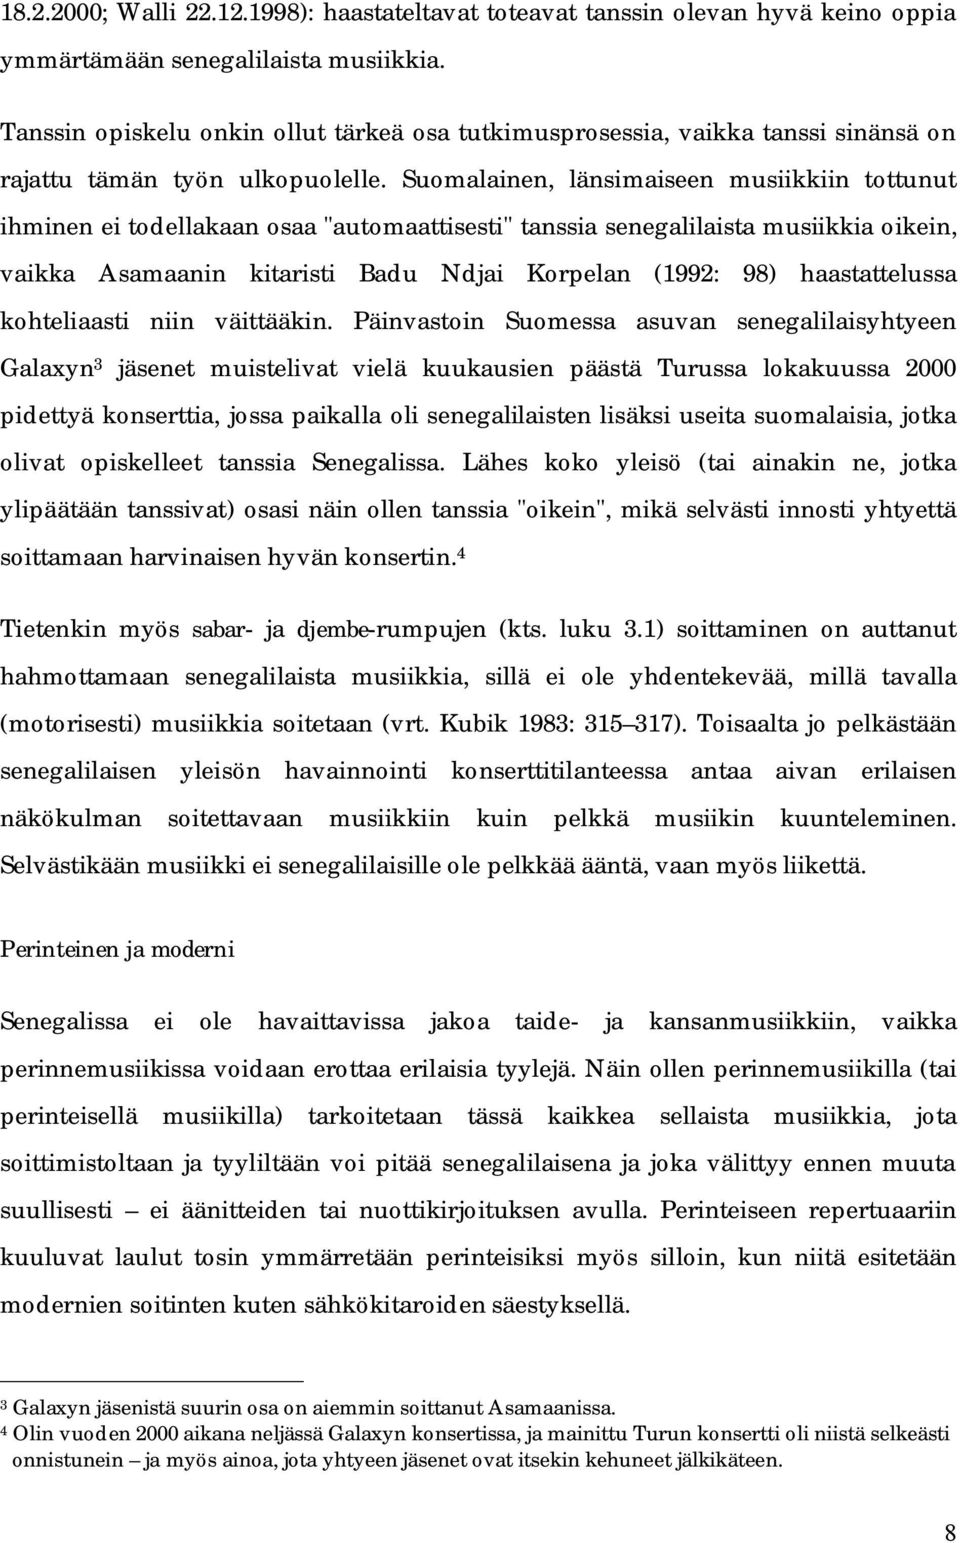 Suomalainen, länsimaiseen musiikkiin tottunut ihminen ei todellakaan osaa "automaattisesti" tanssia senegalilaista musiikkia oikein, vaikka Asamaanin kitaristi Badu Ndjai Korpelan (1992: 98)